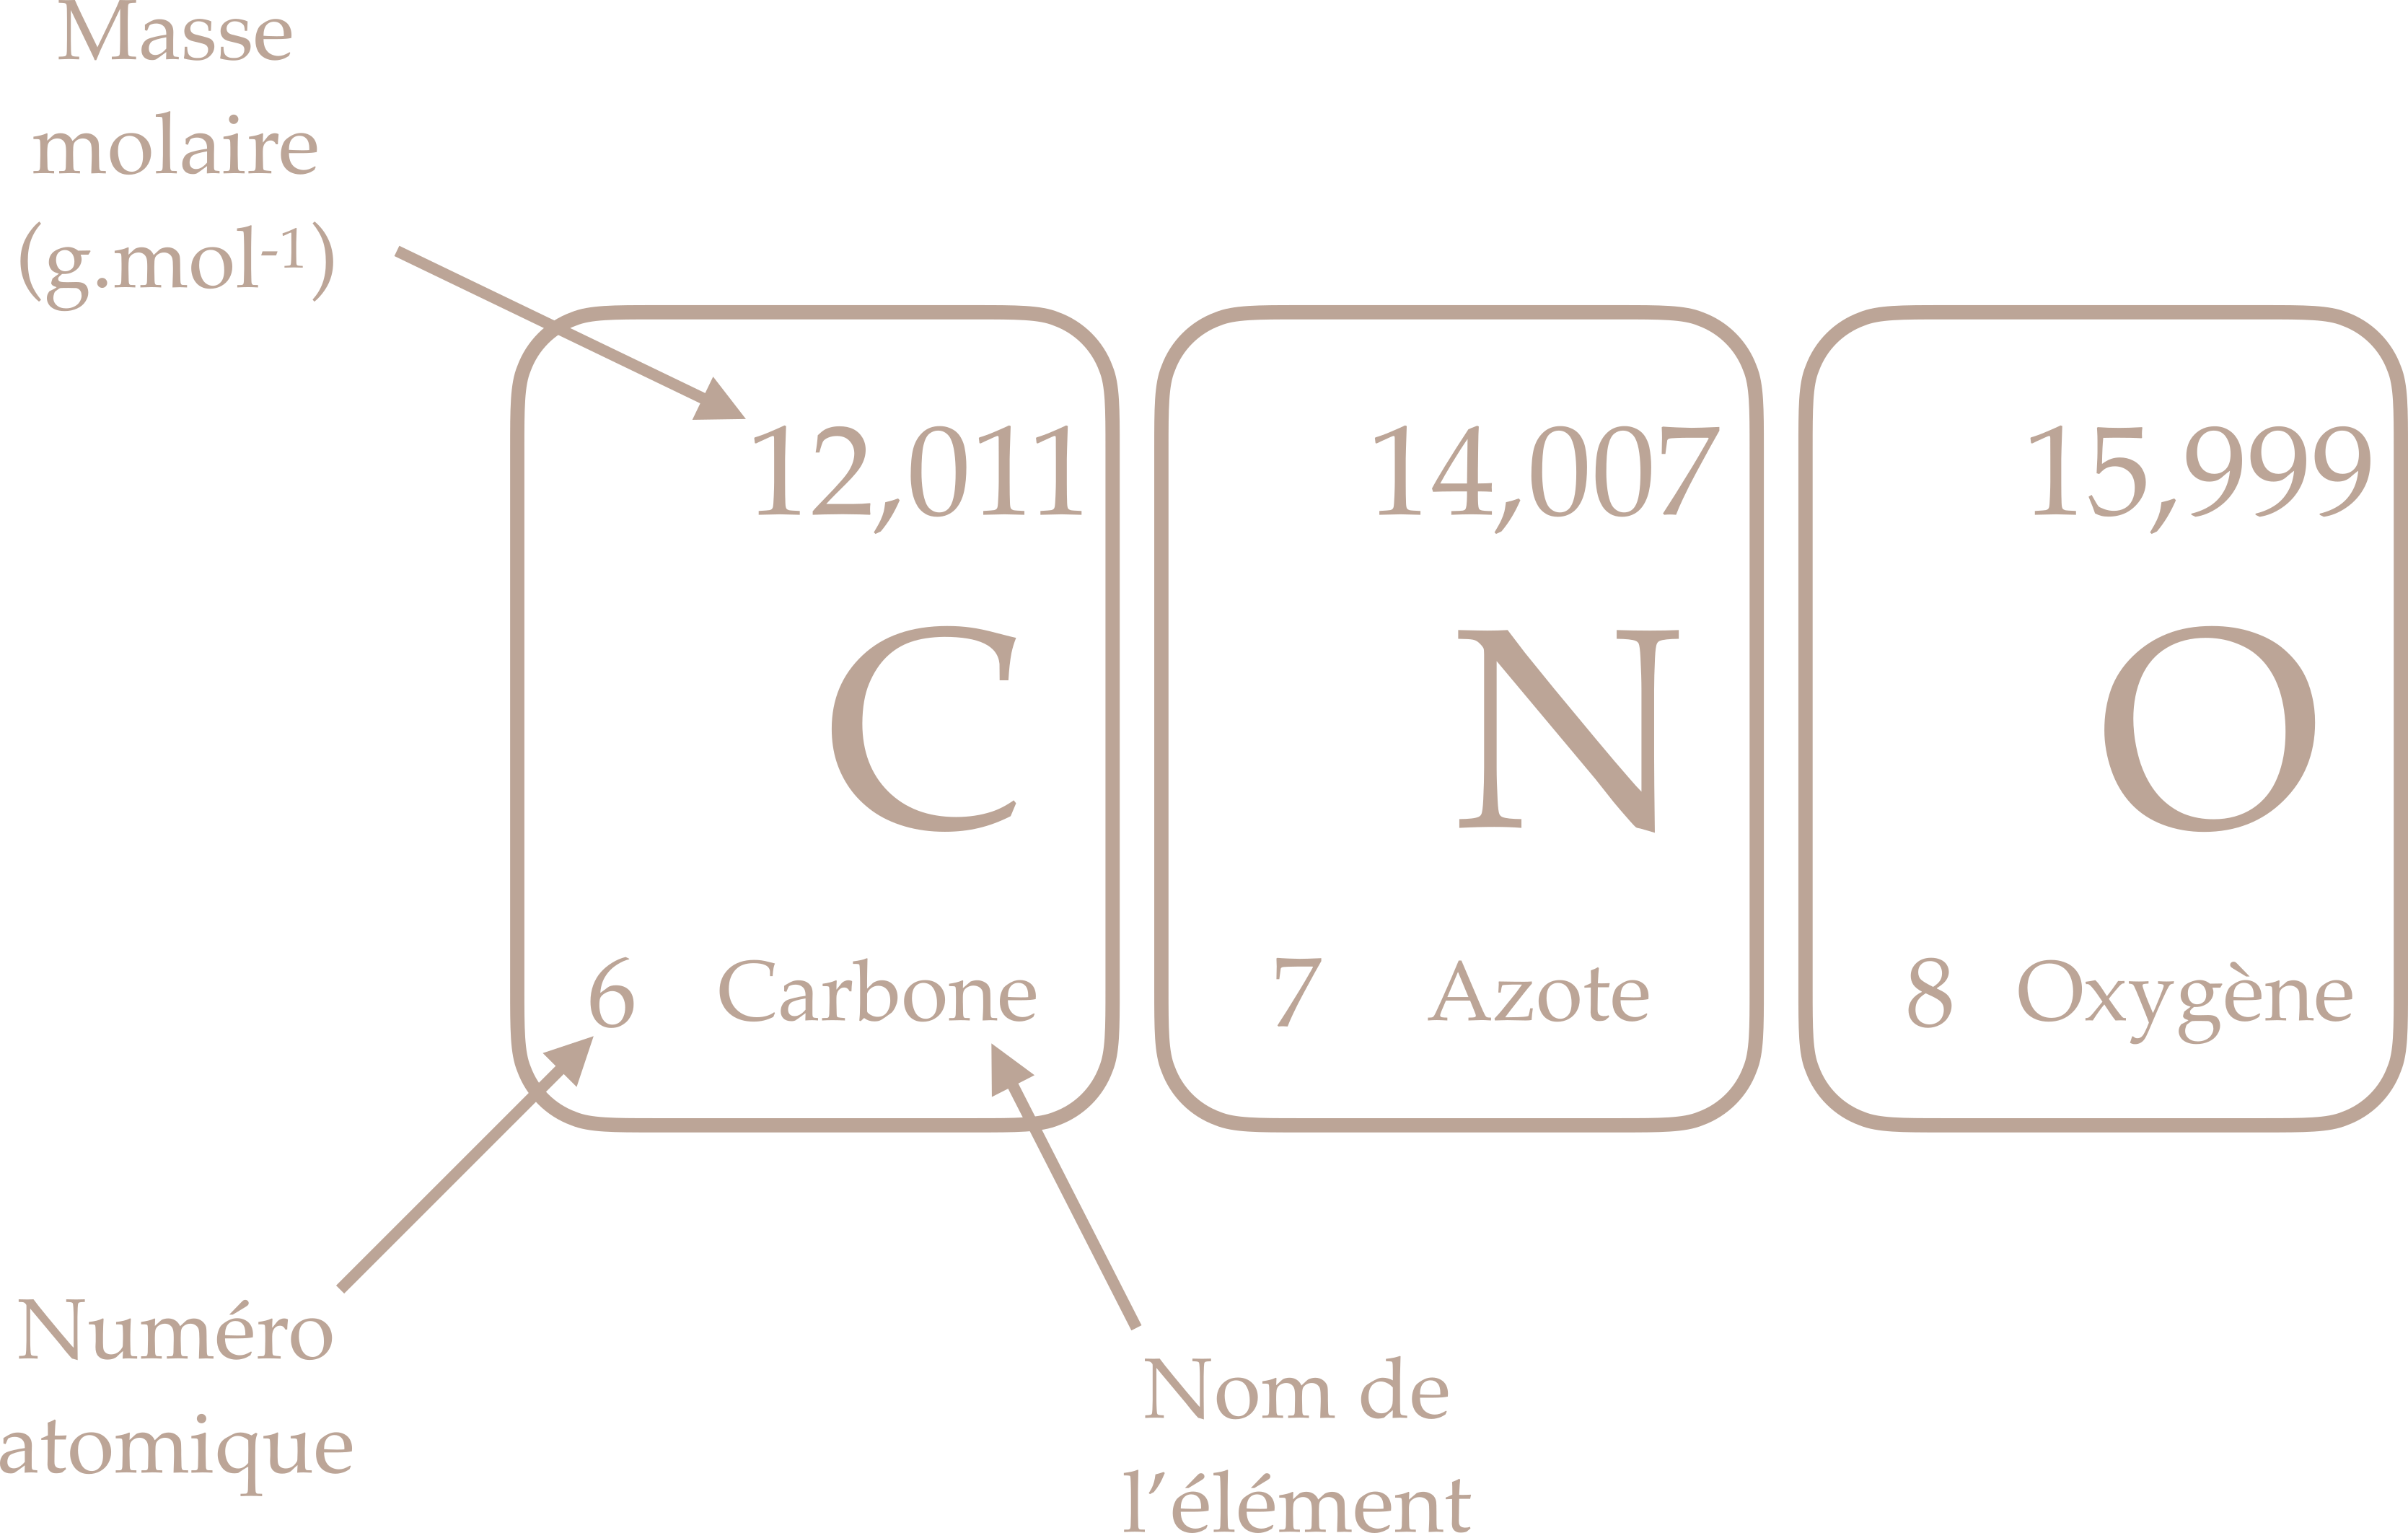 Extrait du tableau périodique des éléments représentant le Carbone, Azote et Oxygène.